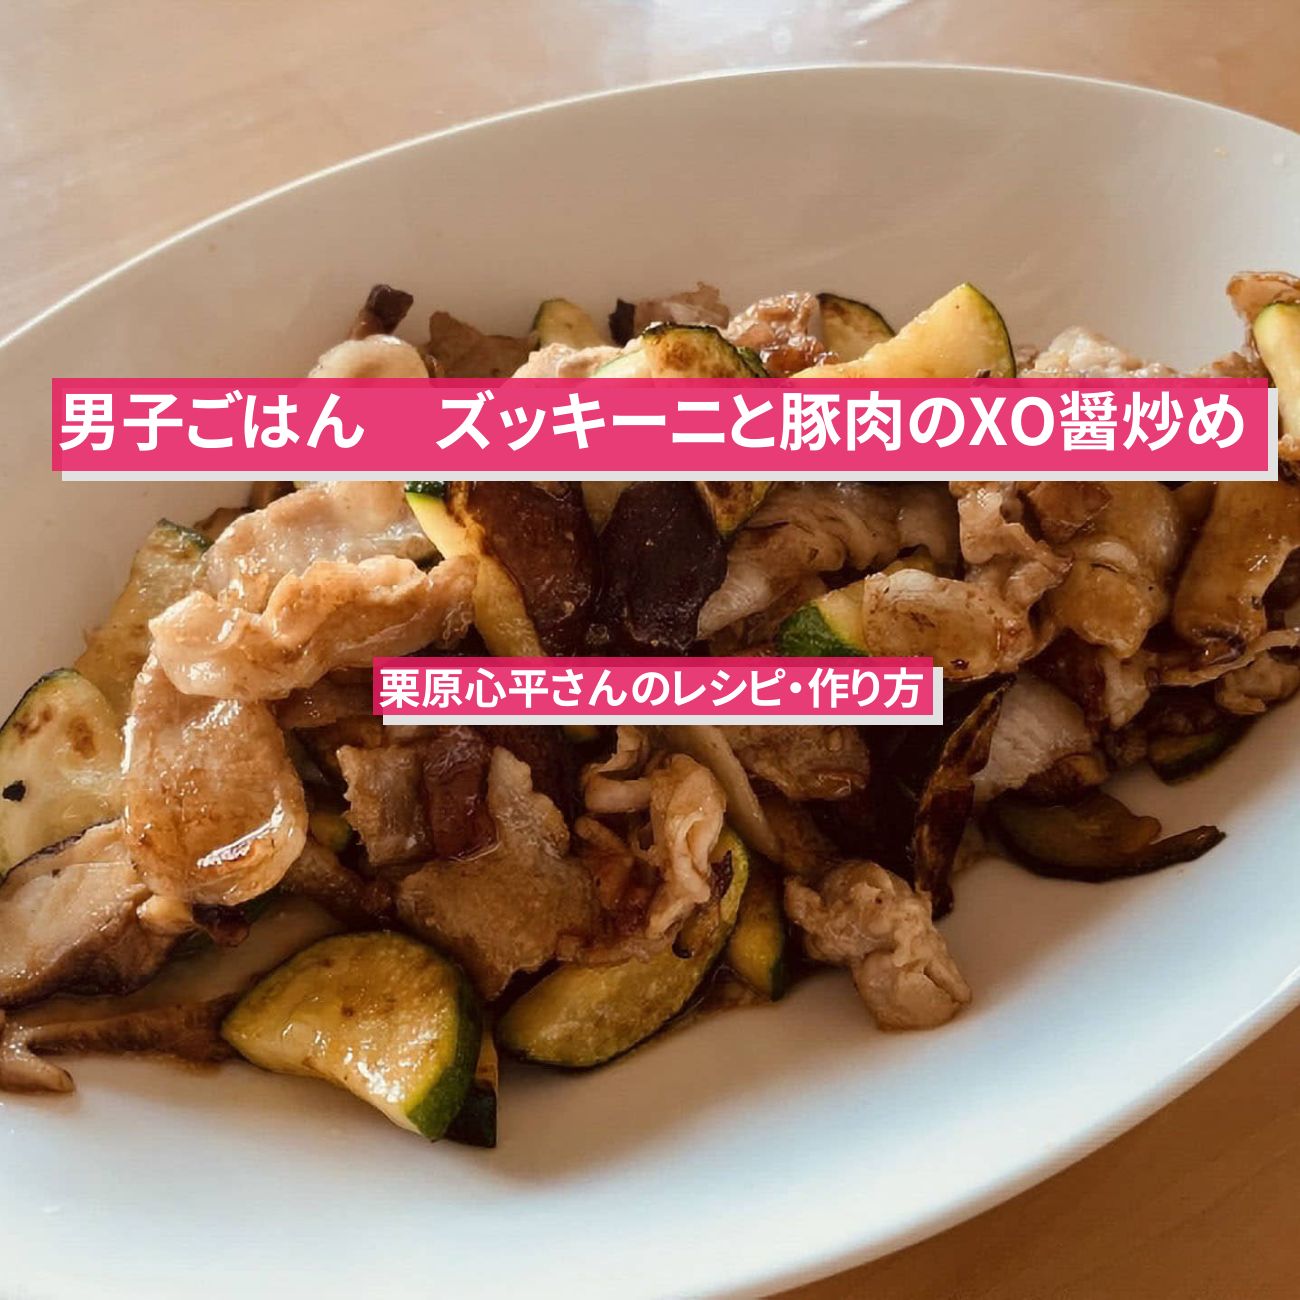 【男子ごはん】『ズッキーニと豚肉のXO醤炒め』のレシピ・作り方